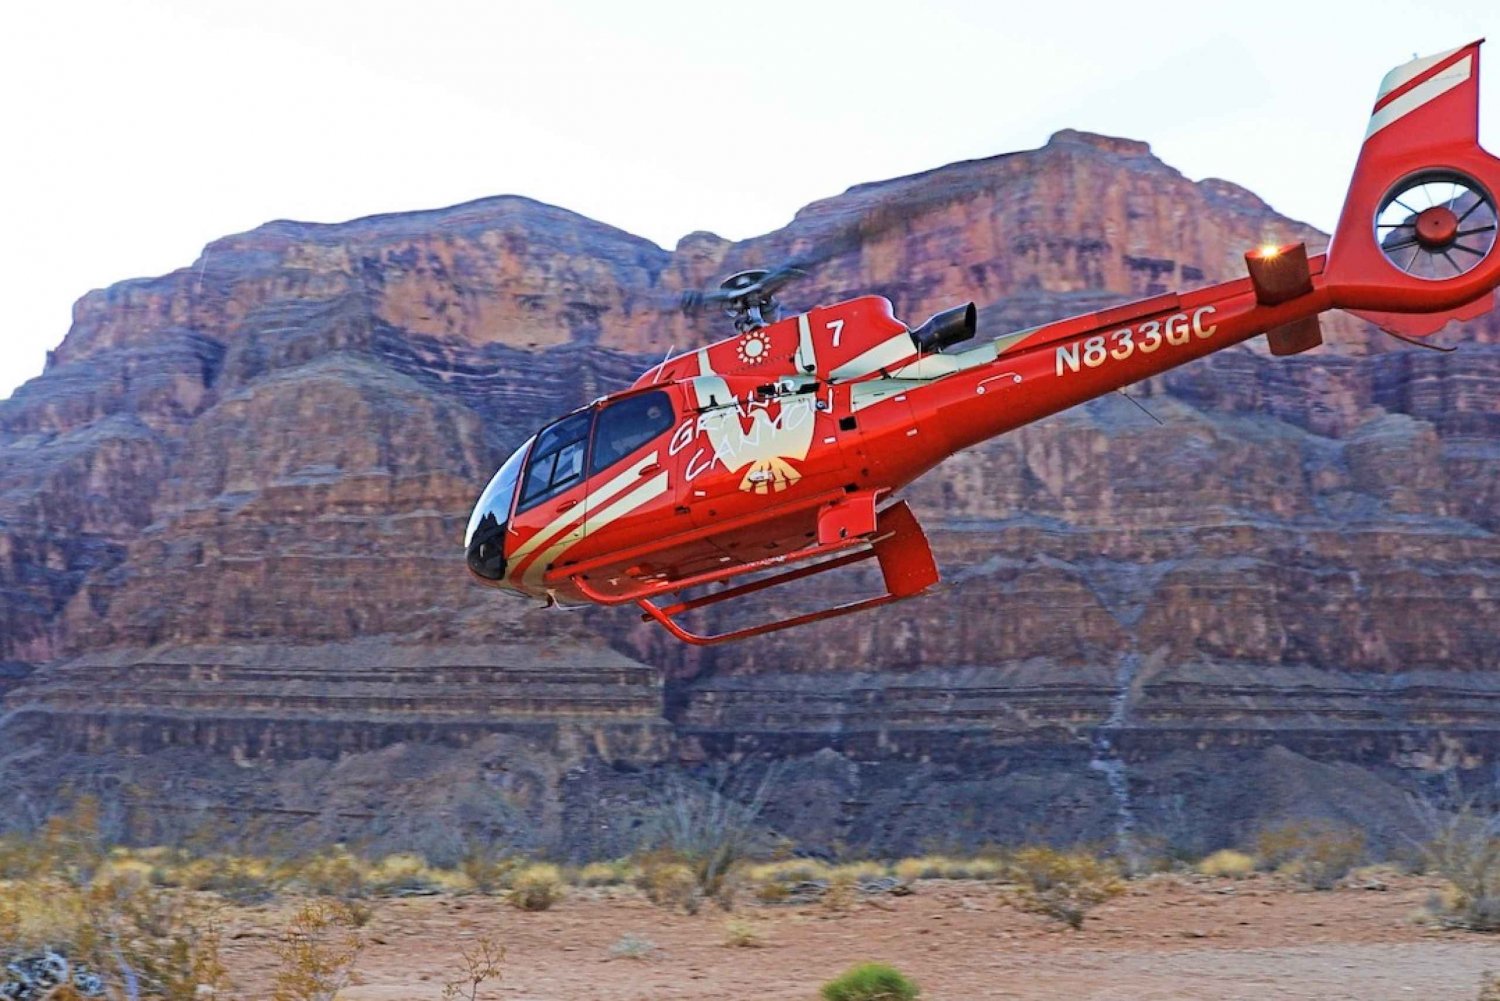 Las Vegas: Grand Canyon Helicopter Ride, Rejs wycieczkowy i Skywalk